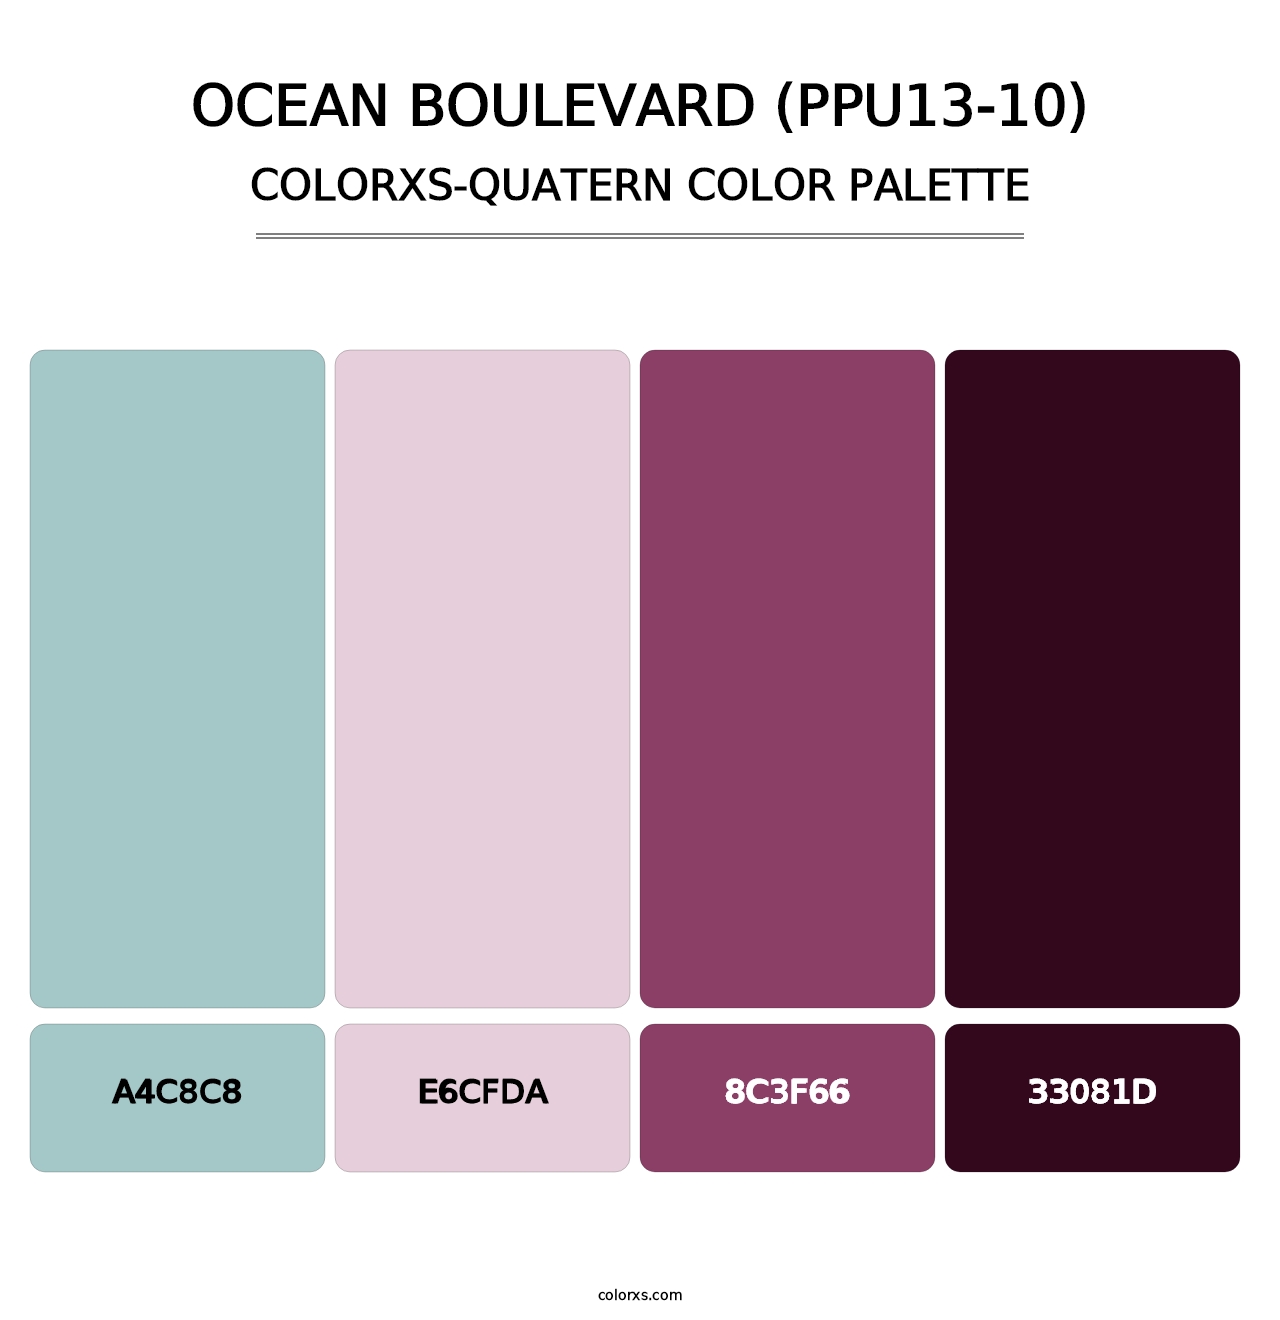 Ocean Boulevard (PPU13-10) - Colorxs Quatern Palette